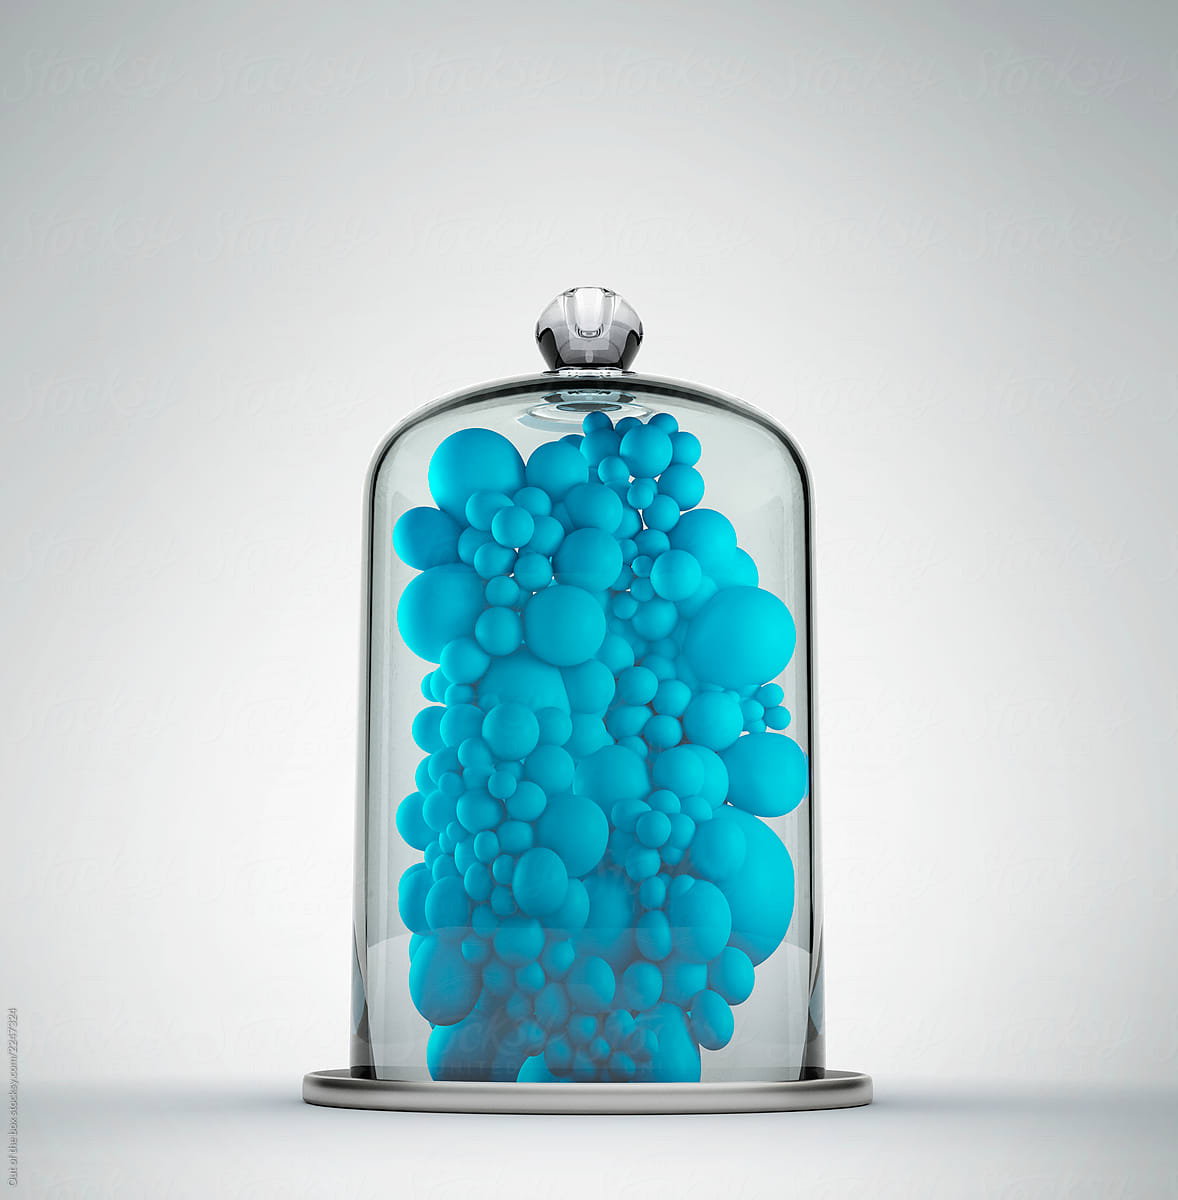 Bell jar full of blue spheres